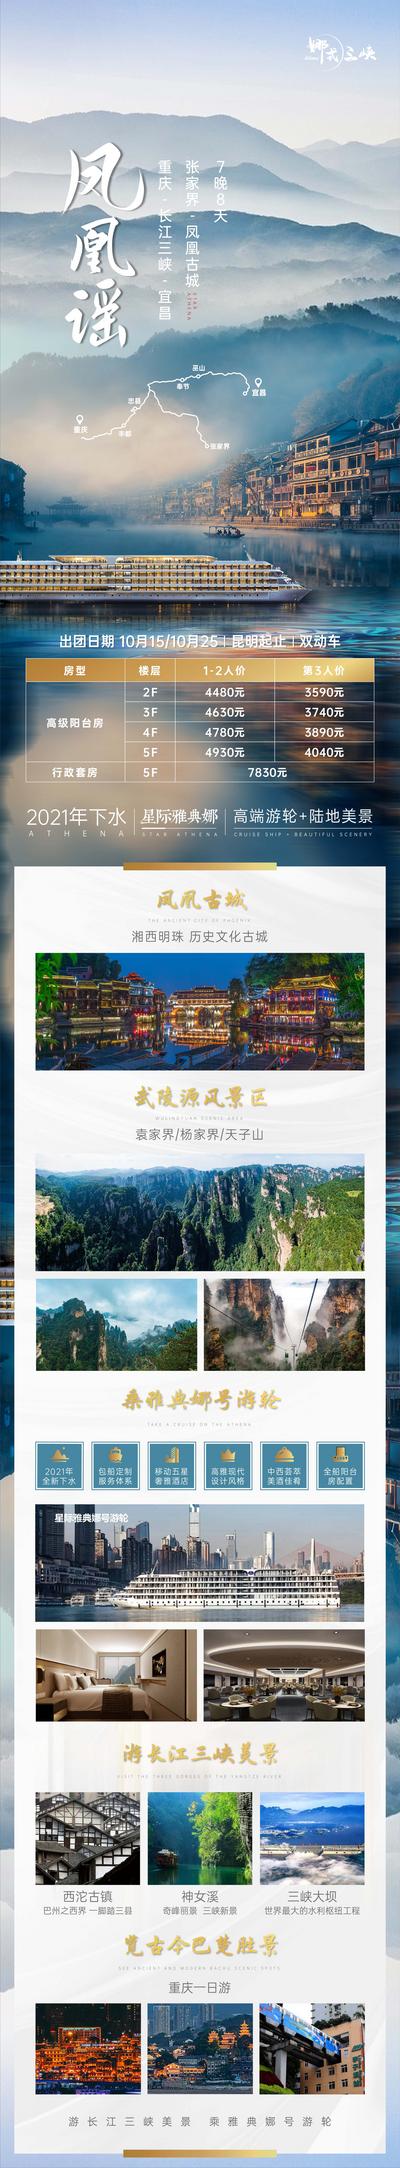 【南门网】海报 旅游 重庆 长江 三峡 星际 雅典娜 游轮 凤凰 古城